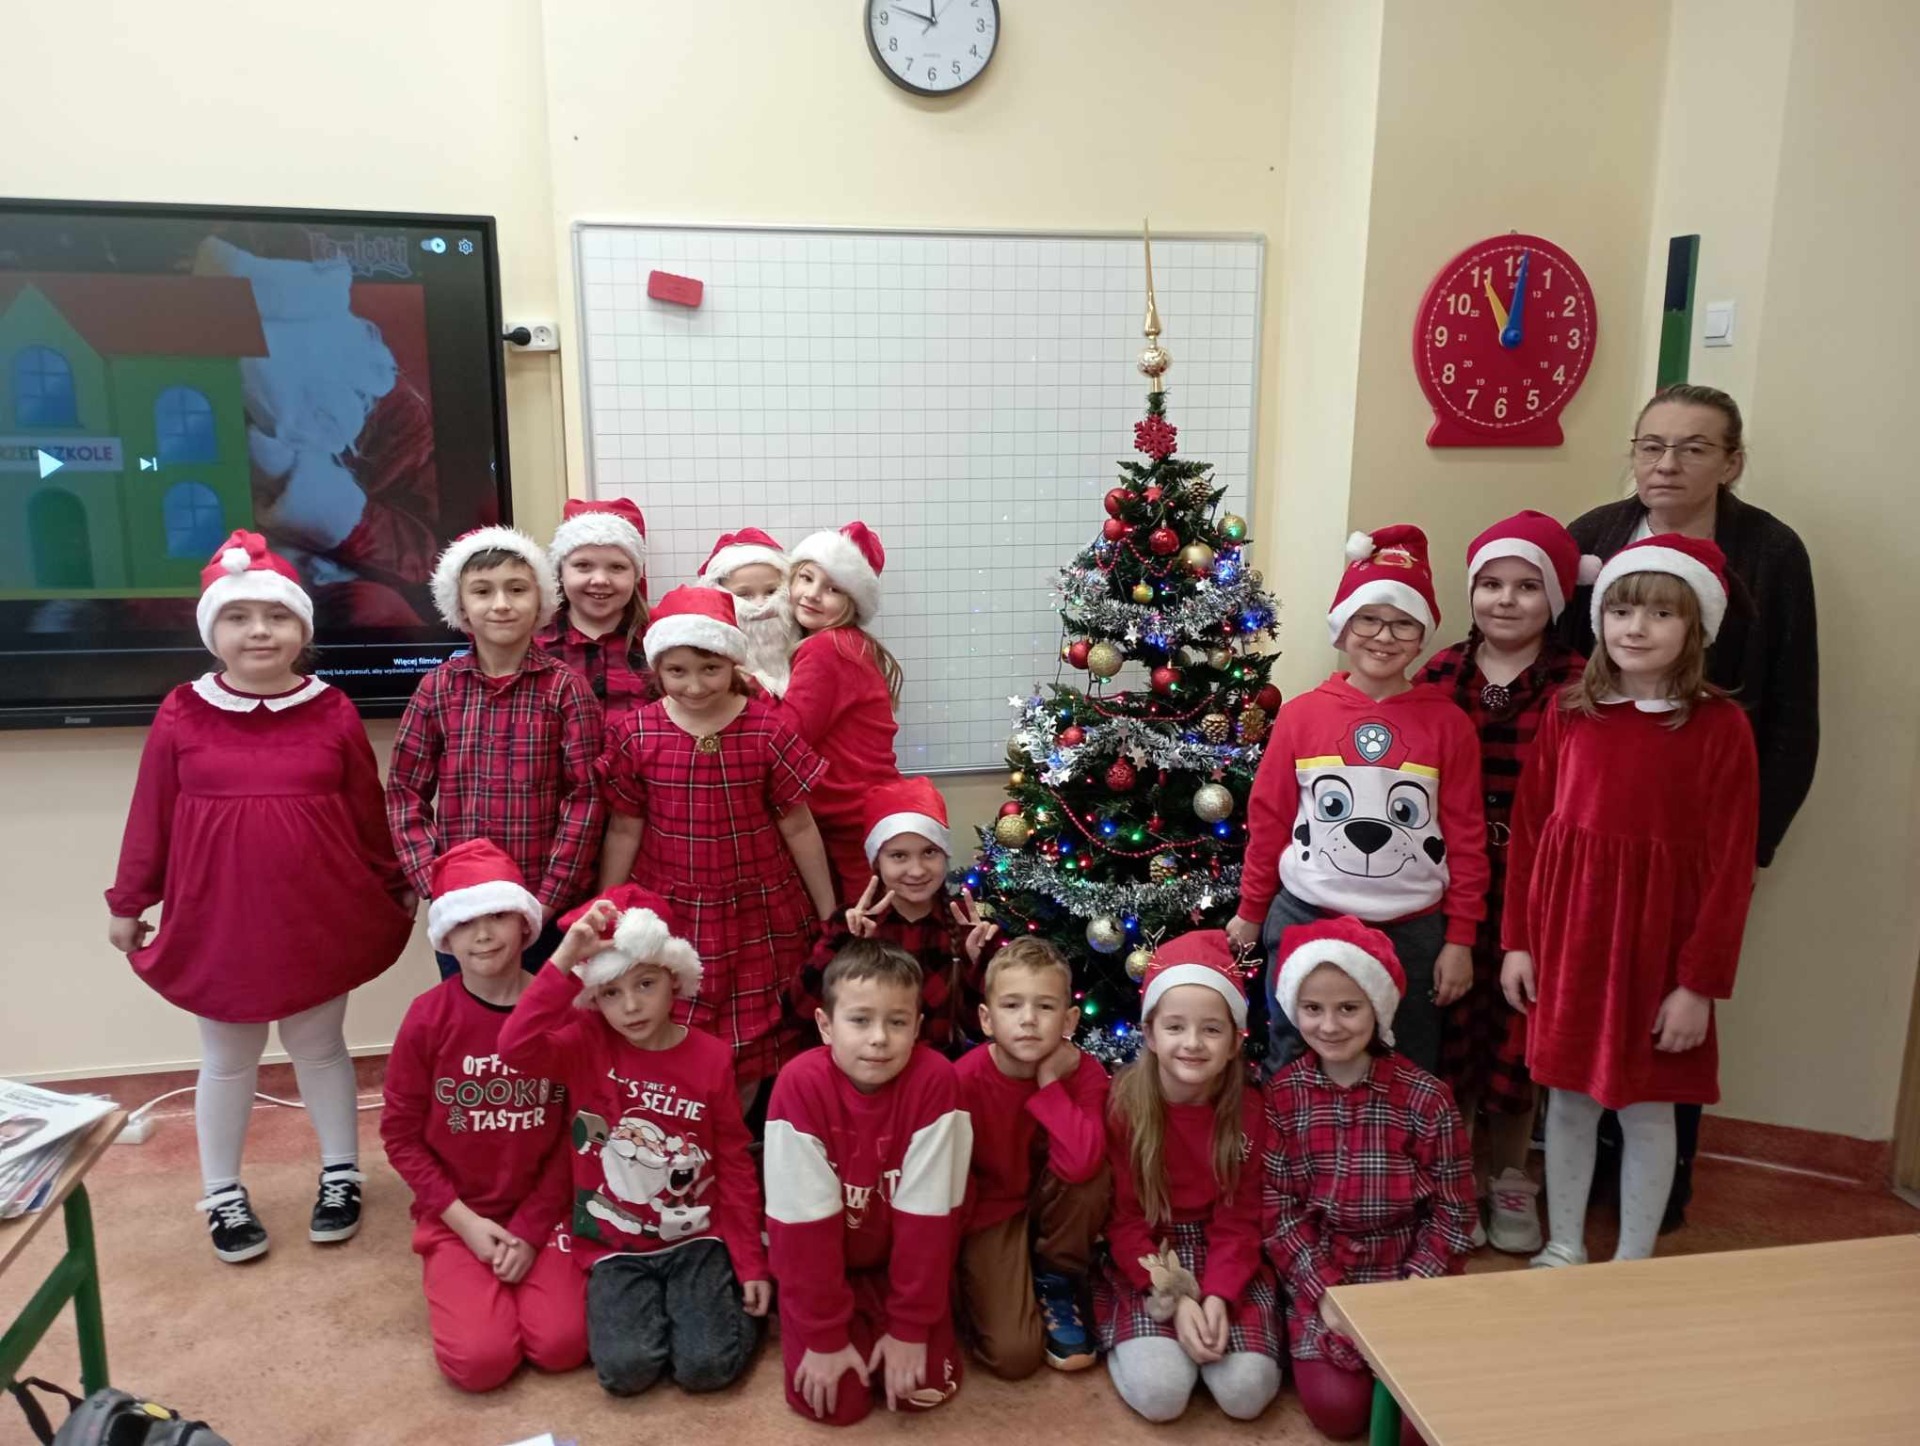 Uczniowie Szkoły Podstawowej Nr 2 im. Mikołaja Kopernika w Olecku w kolorach czerwonych Świętego Mikołaja